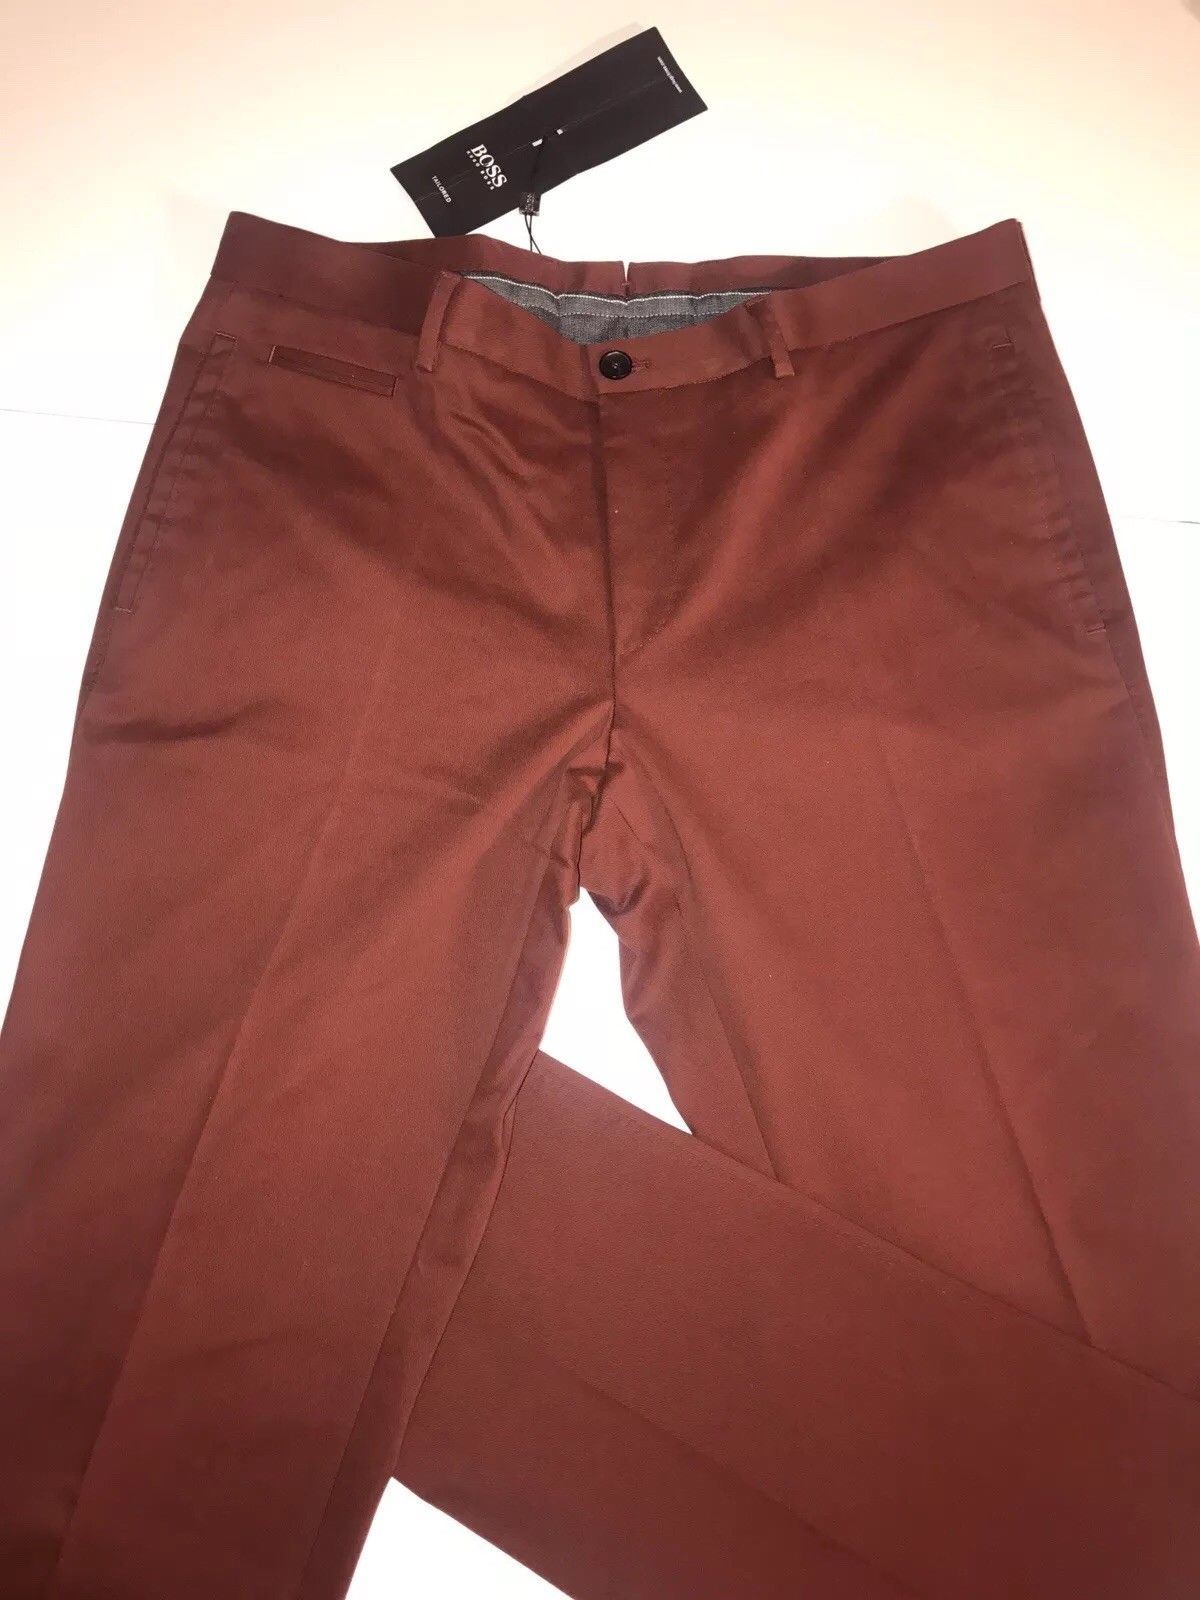 NWT $295 Boss Hugo Boss 1-Glenden Modern Mens Dark Red Dress Pants Size 36 US